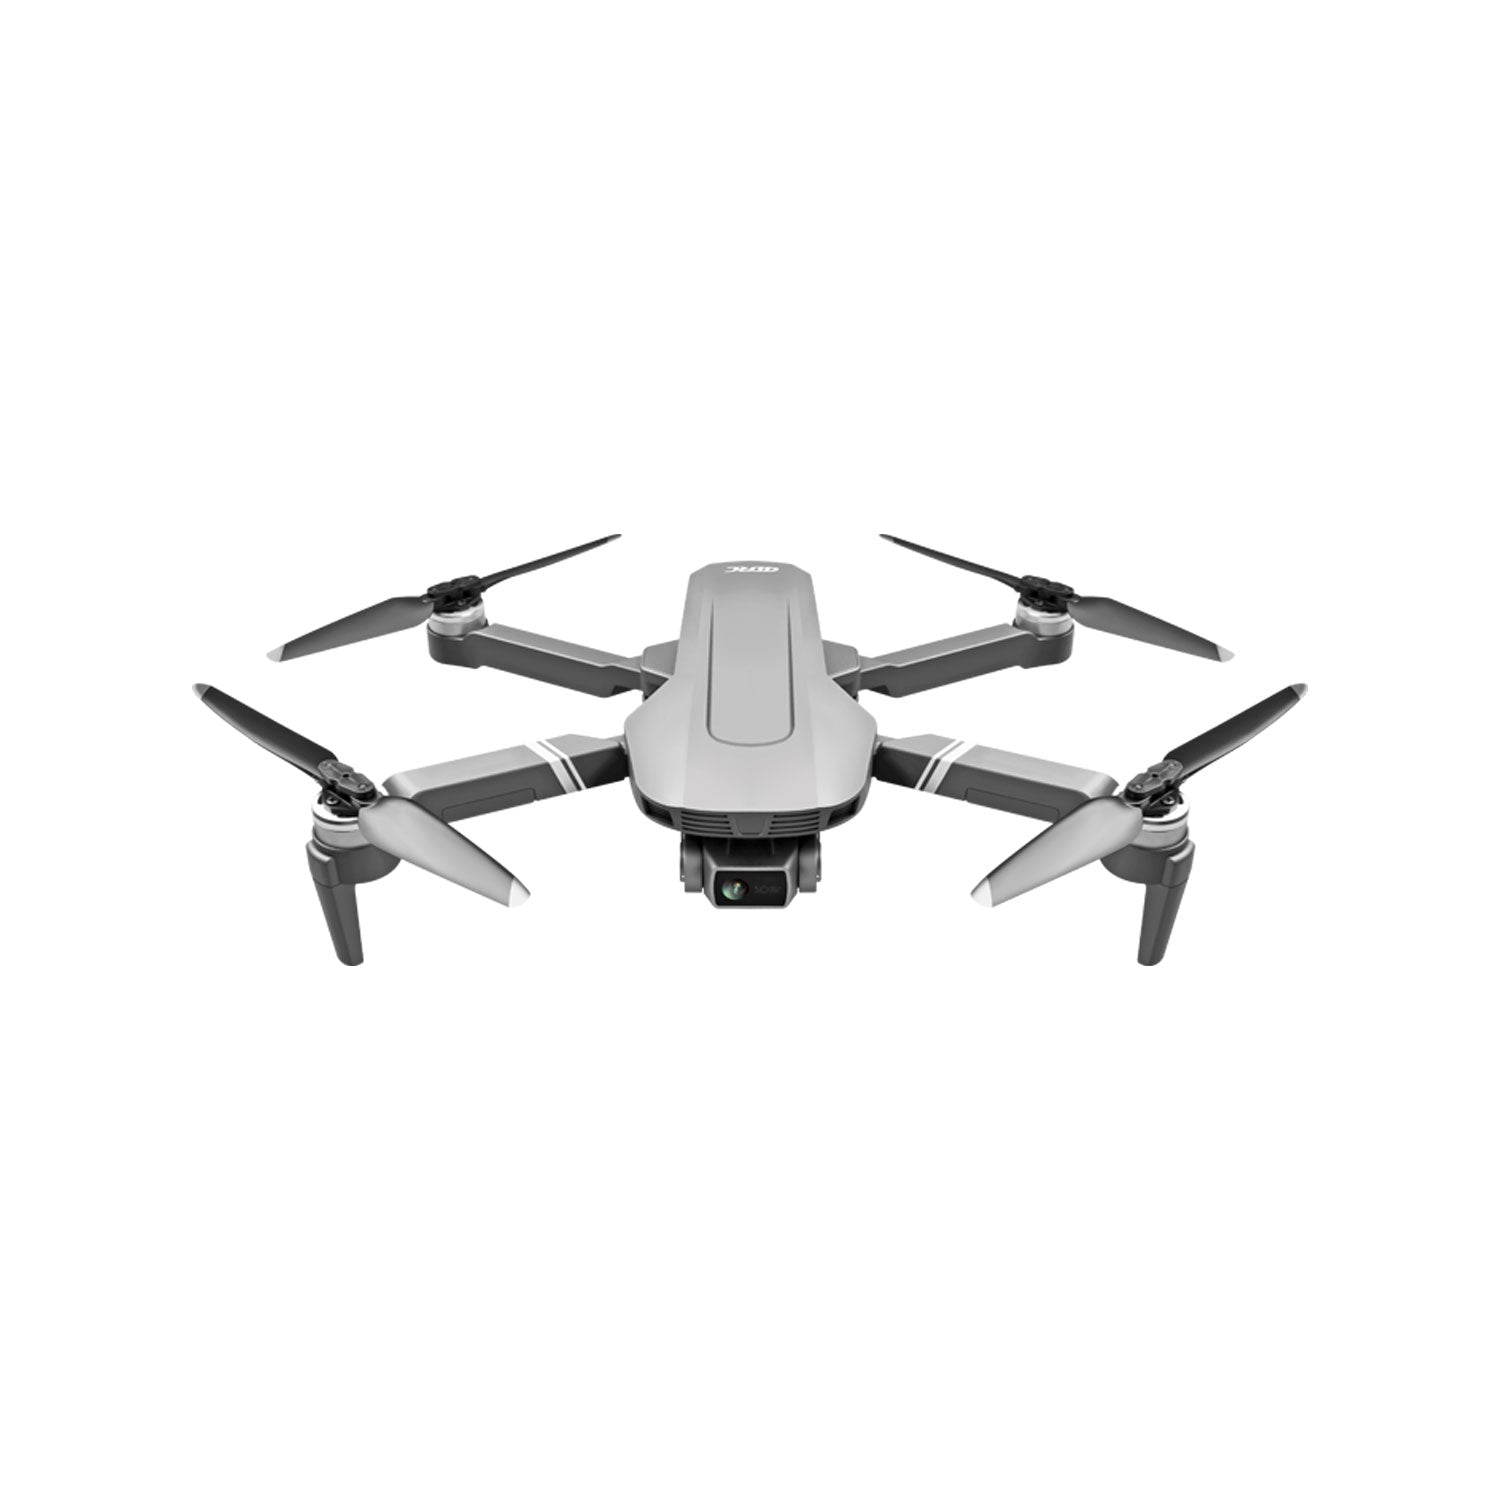 Caméra unique - Drones caméra pour adultes, GPS, caméra 4K pour